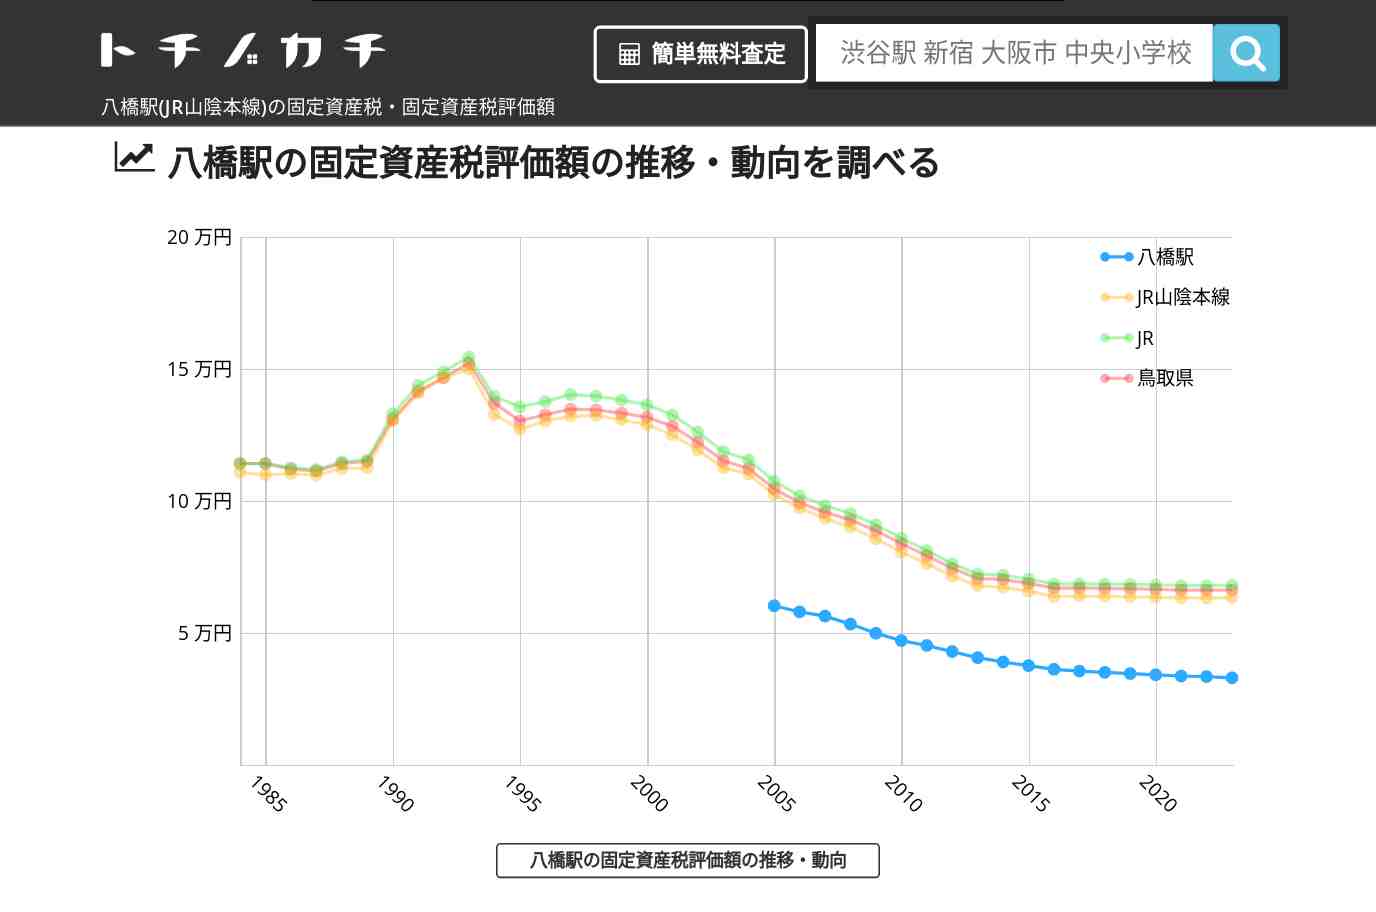 八橋駅(JR山陰本線)の固定資産税・固定資産税評価額 | トチノカチ